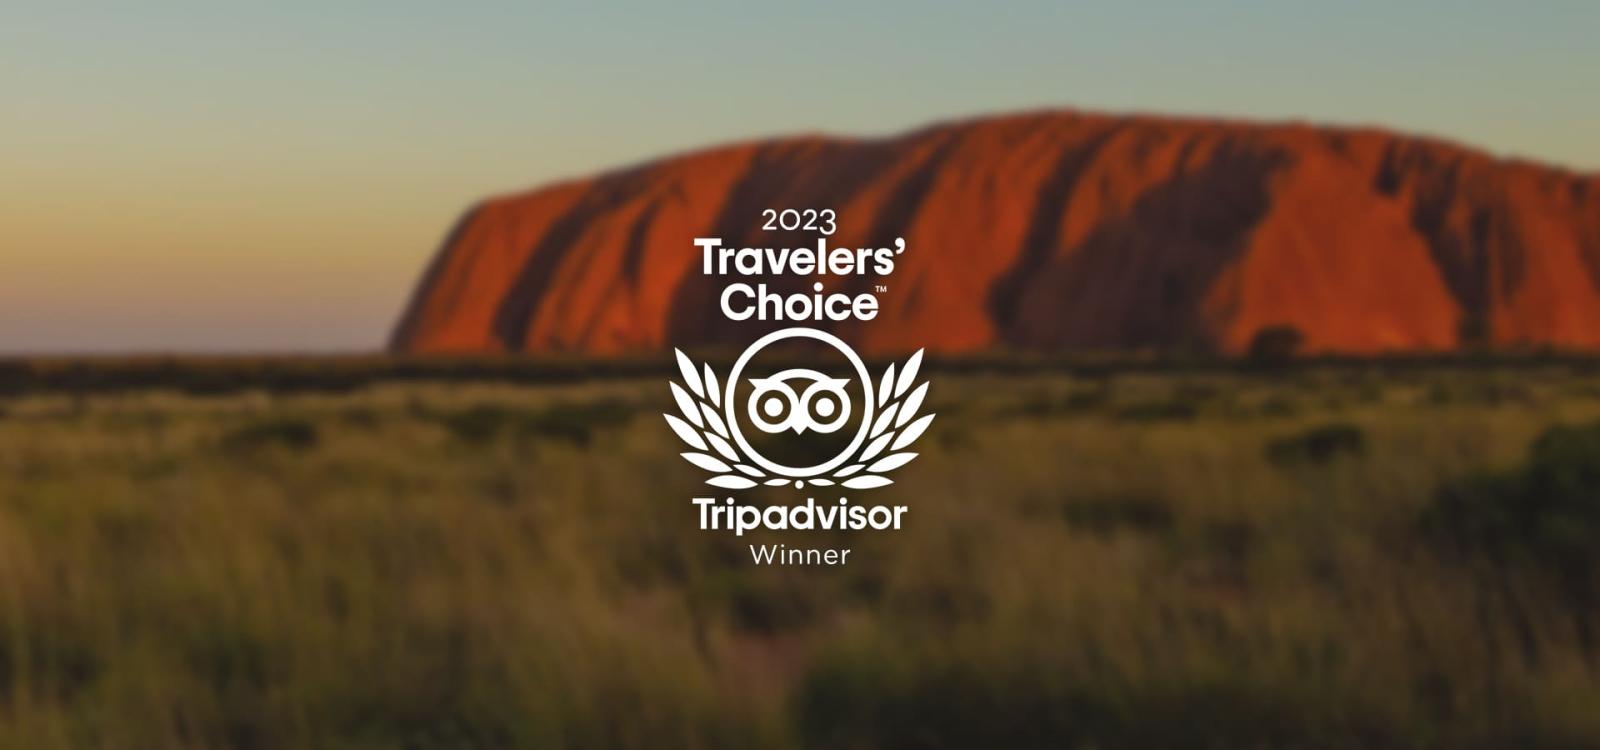 Tripadvisor Travelers’ Choice Awards